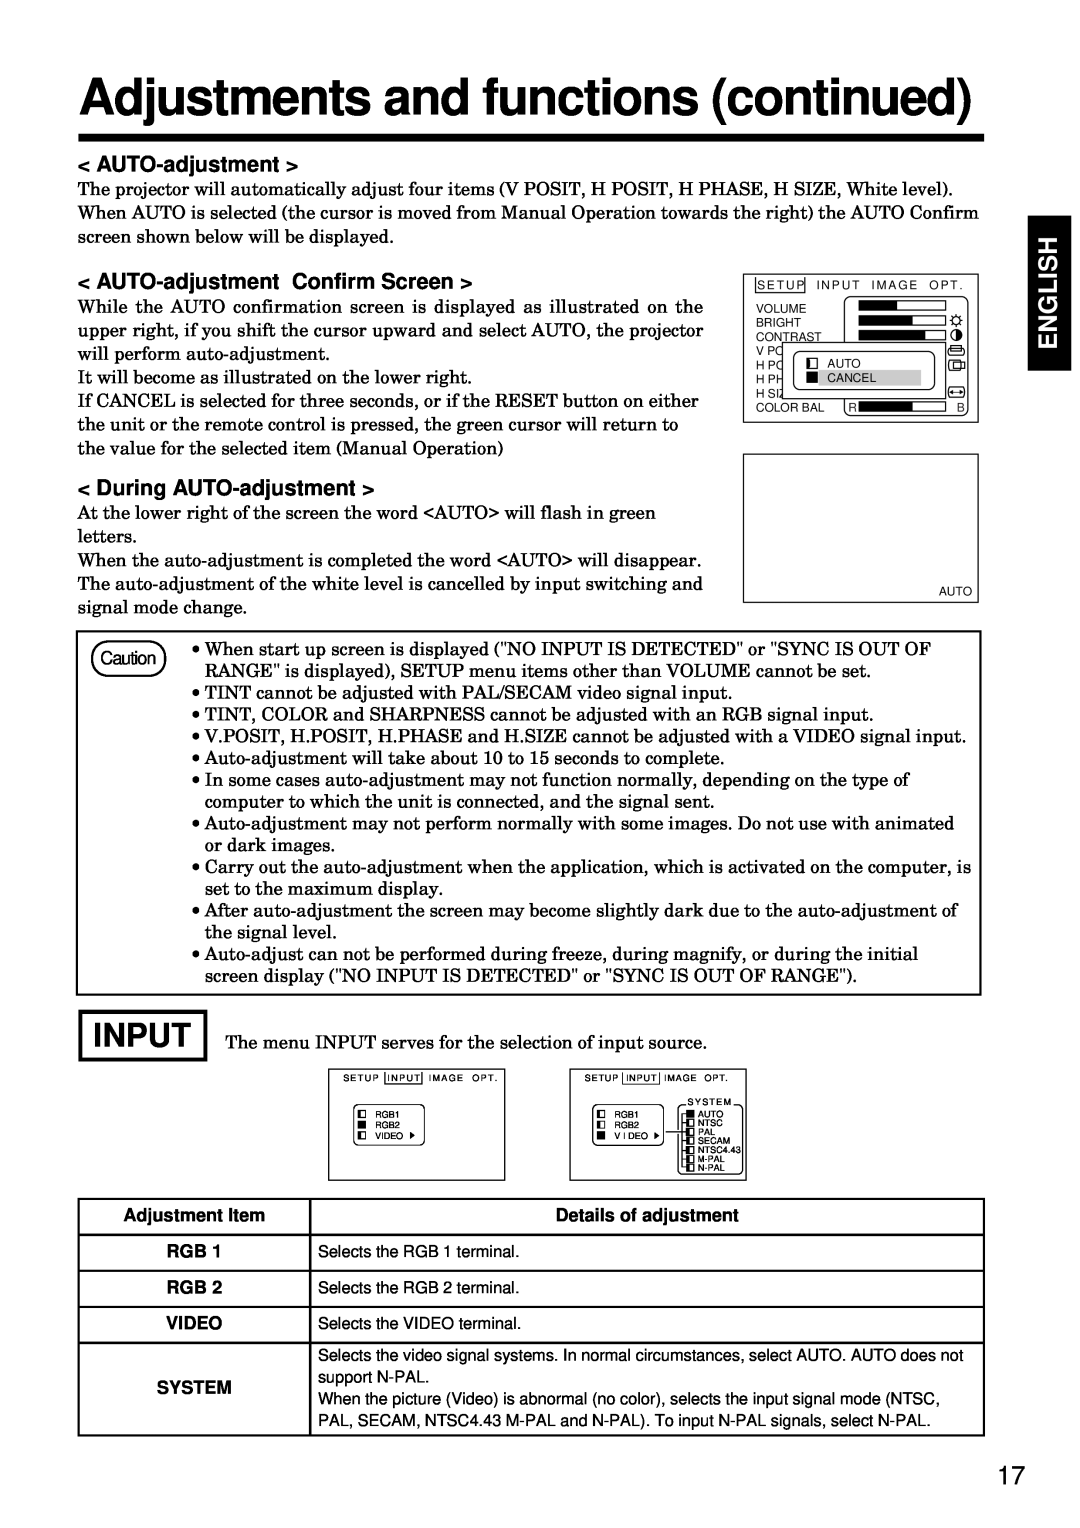 BOXLIGHT MP-93i Input, AUTO-adjustment Confirm Screen, During AUTO-adjustment, Adjustments and functions continued 